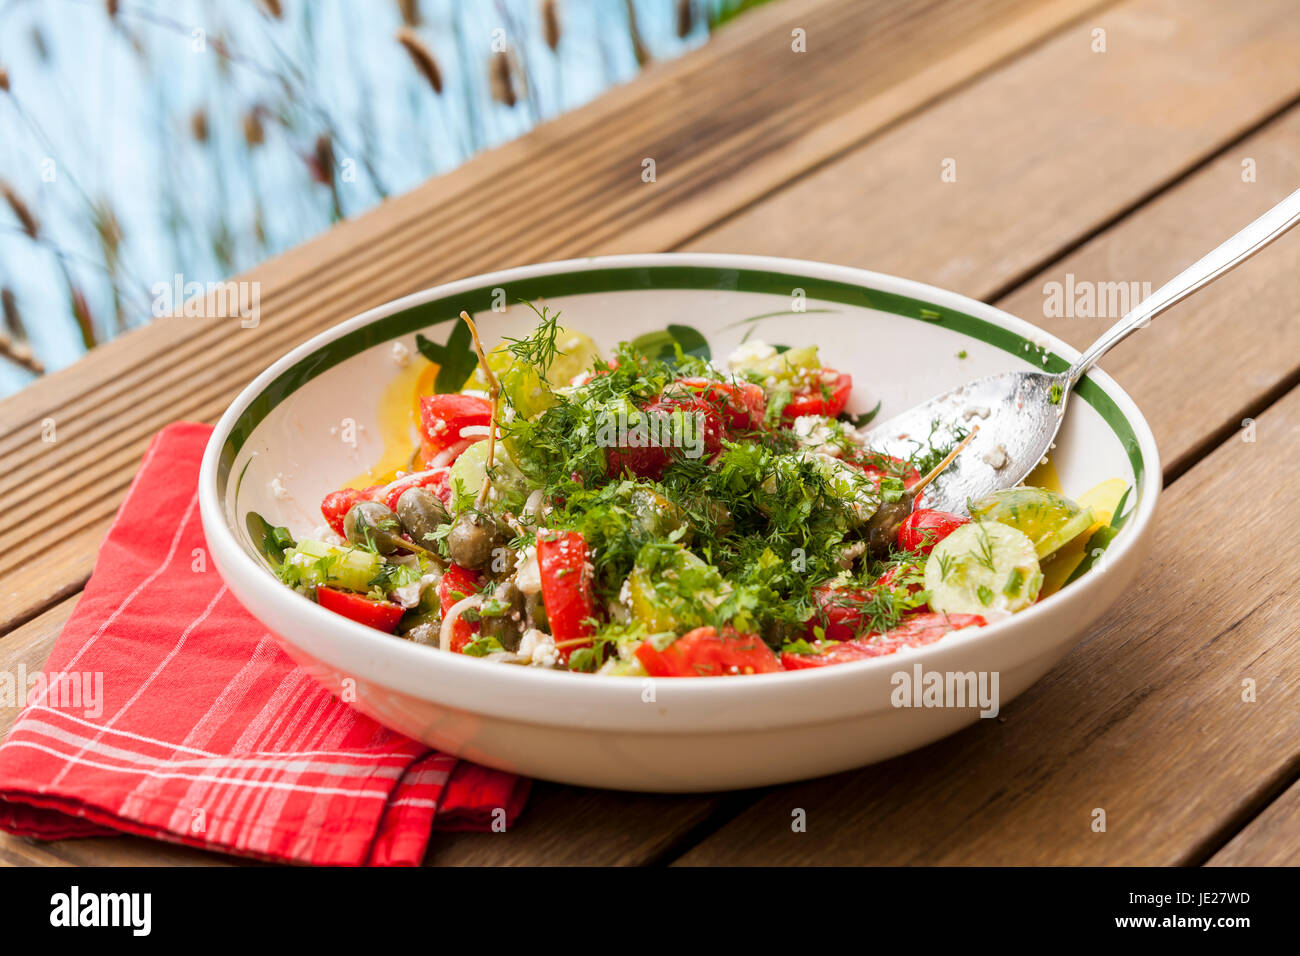 Schüssel mit mariniertem griechischen Salat mit Tomaten käse und oliven auf einem holz untergrund Stock Photo